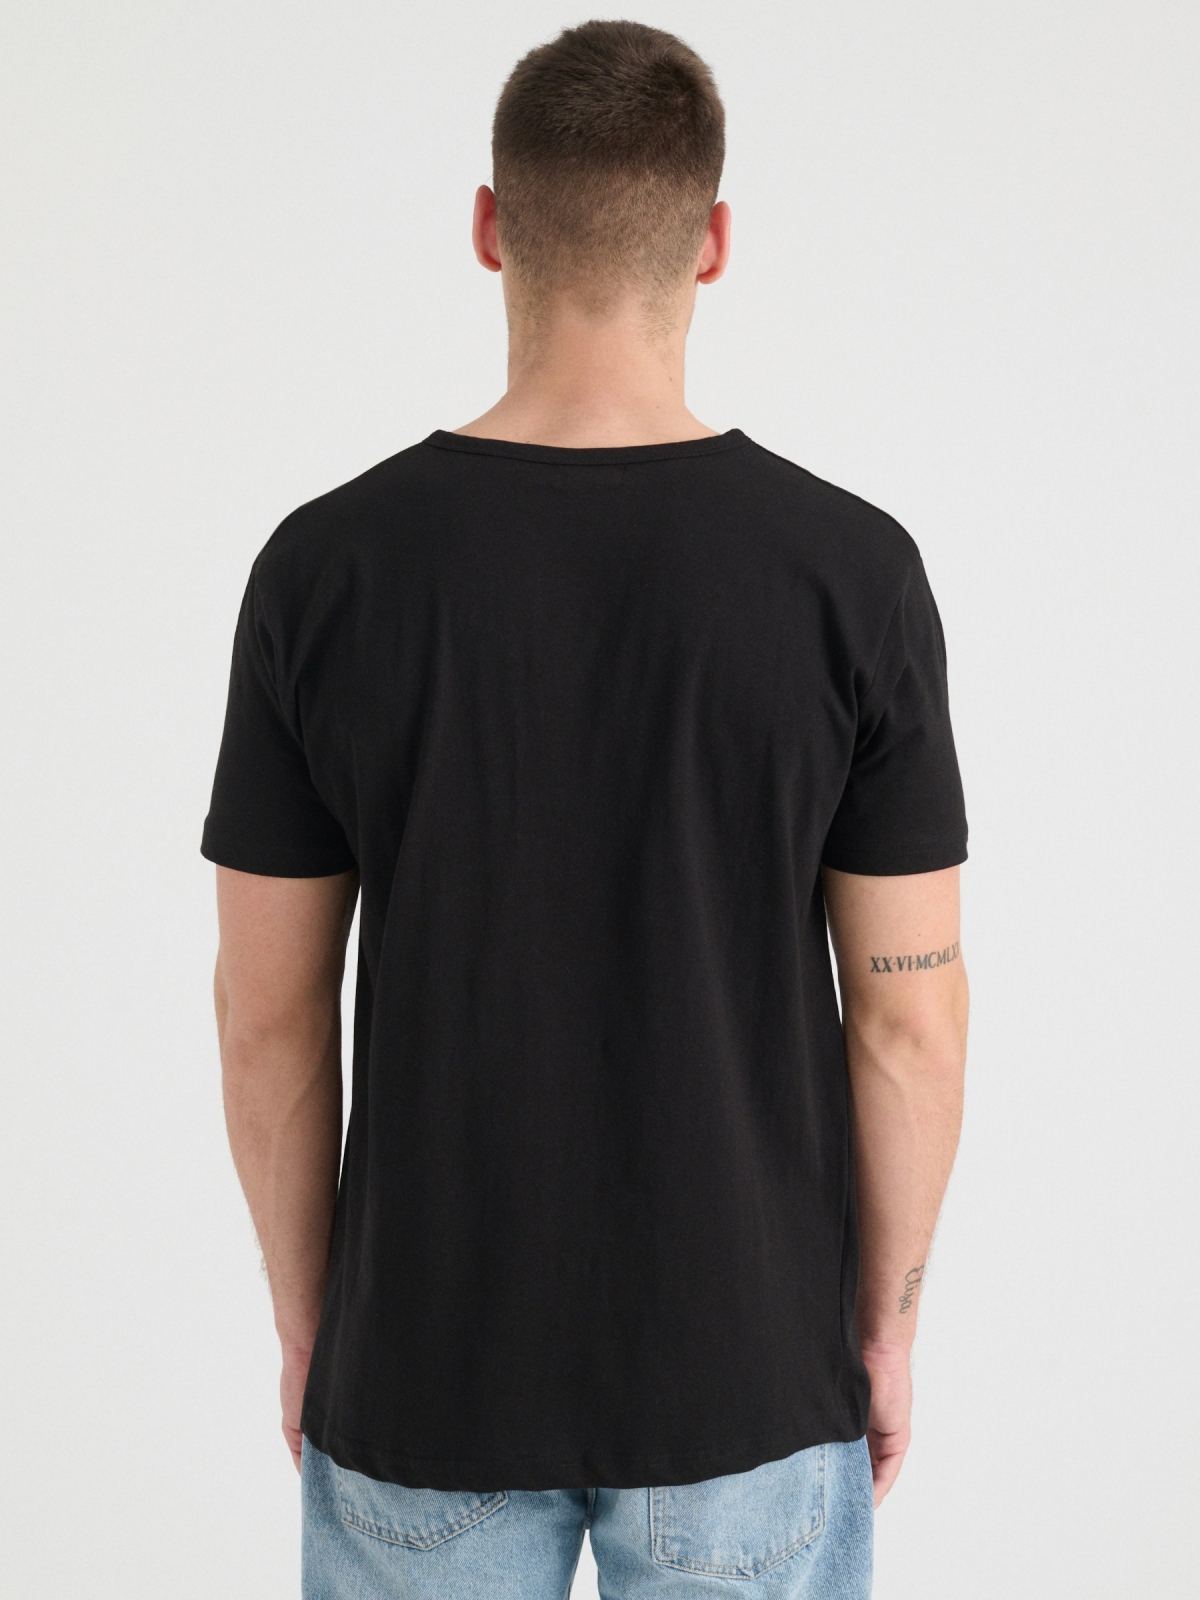 T-shirt gola com botões preto vista meia traseira